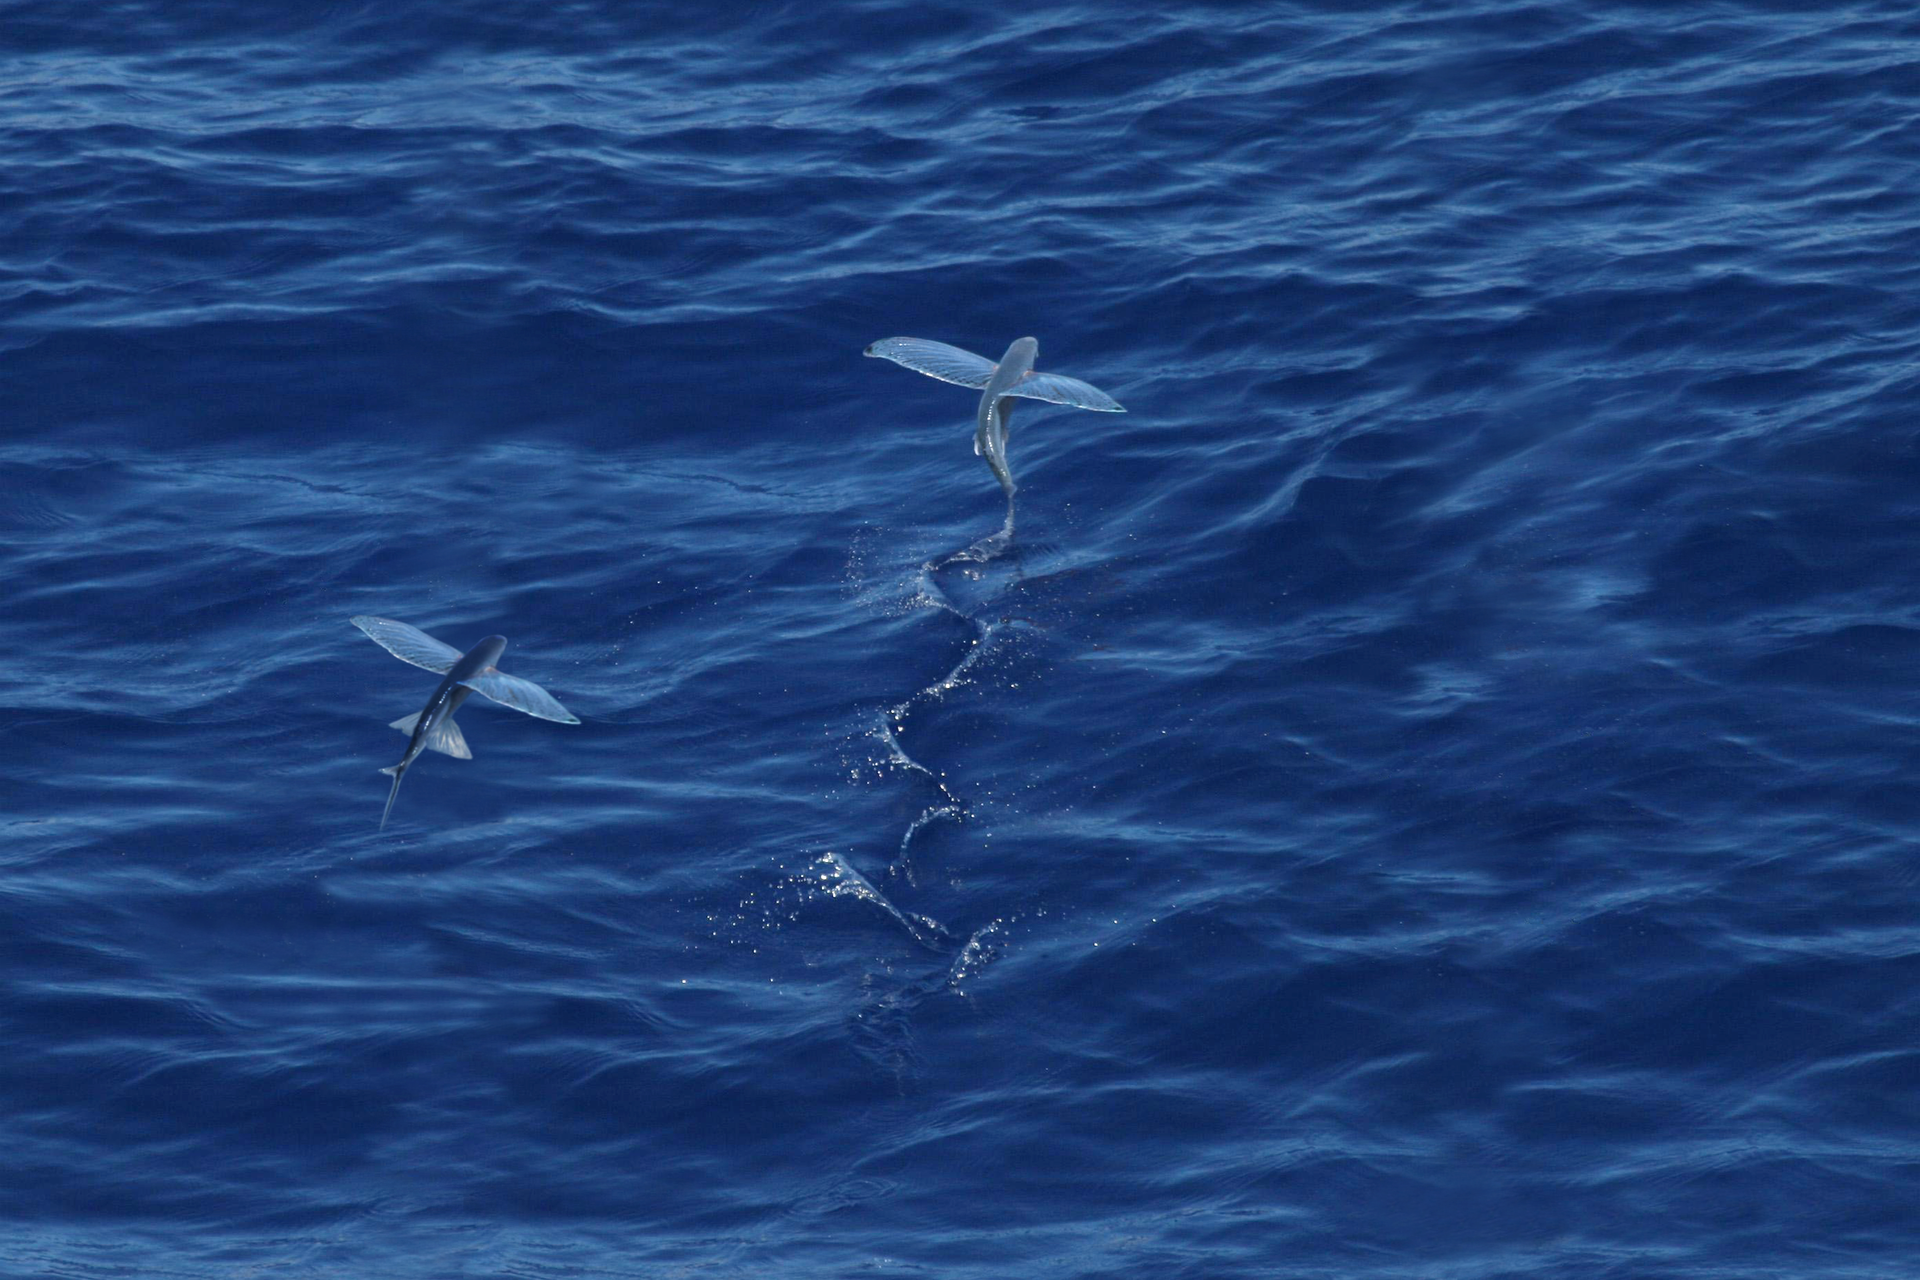 Fotografia przedstawia z góry dwie szarobłękitne ryby nad niebieską powierzchnią morza. To tak zwane ryby latające. Ciało wrzecionowate, płetwy piersiowe i brzuszne szeroko rozłożone poziomo, podobne do ptasich skrzydeł. Ta wyżej ma wygięty tułów, a na wodzie zostawia esowaty ślad po szybkich ruchach płetwą ogonową.